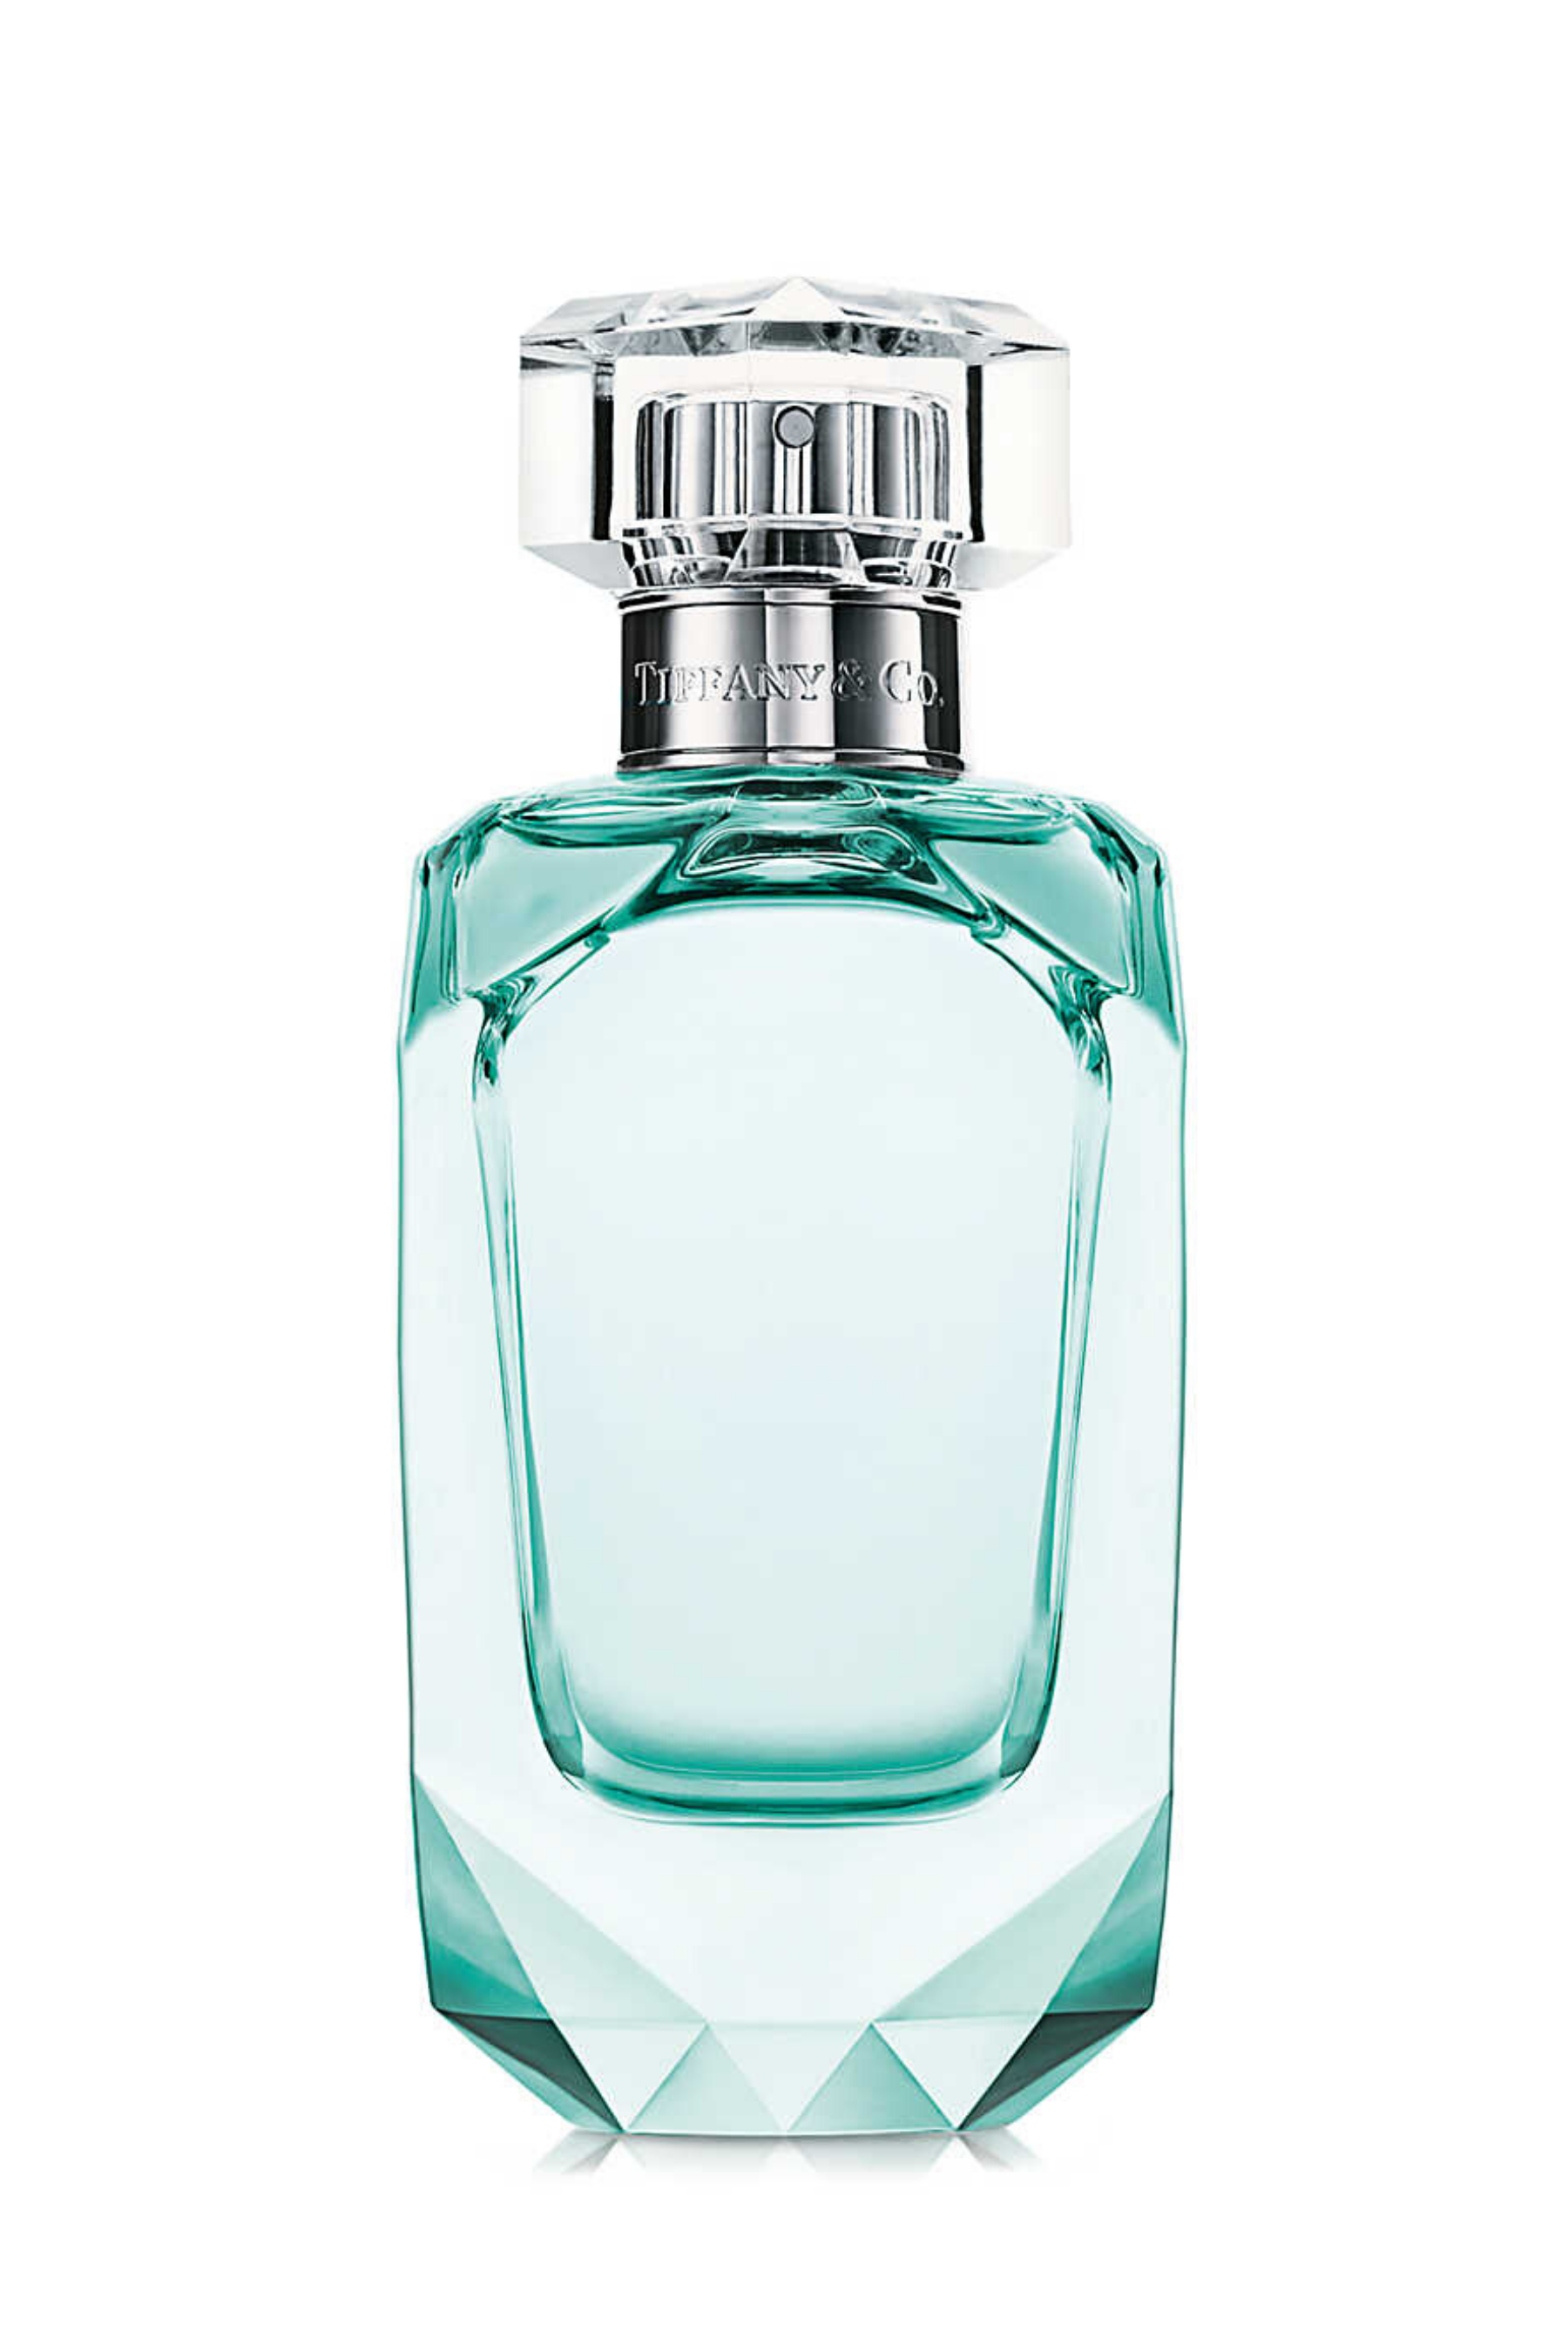 Tiffany & Co. | Intense Eau de Parfum